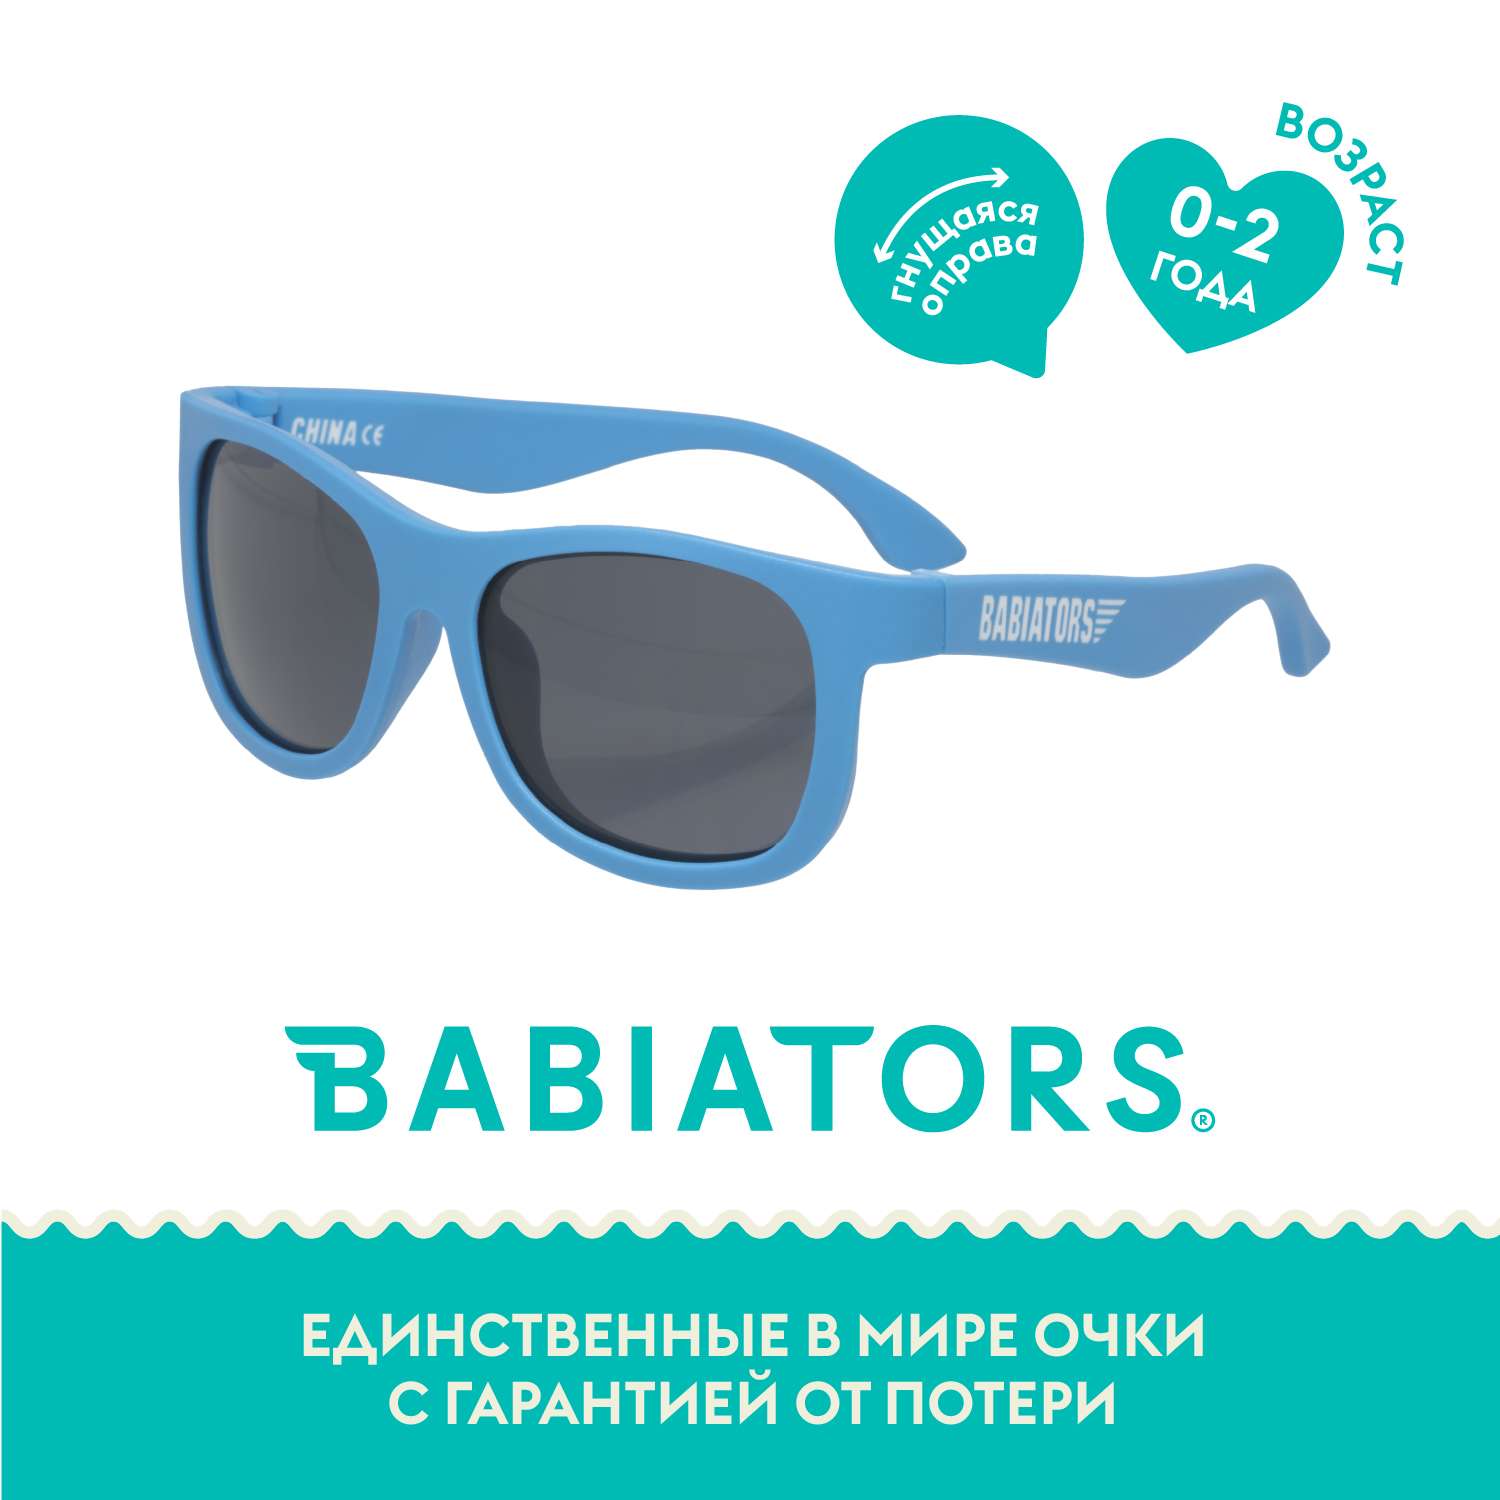 Солнцезащитные очки Babiators Navigator Страстно-синий 0-2 NAV-003 - фото 1